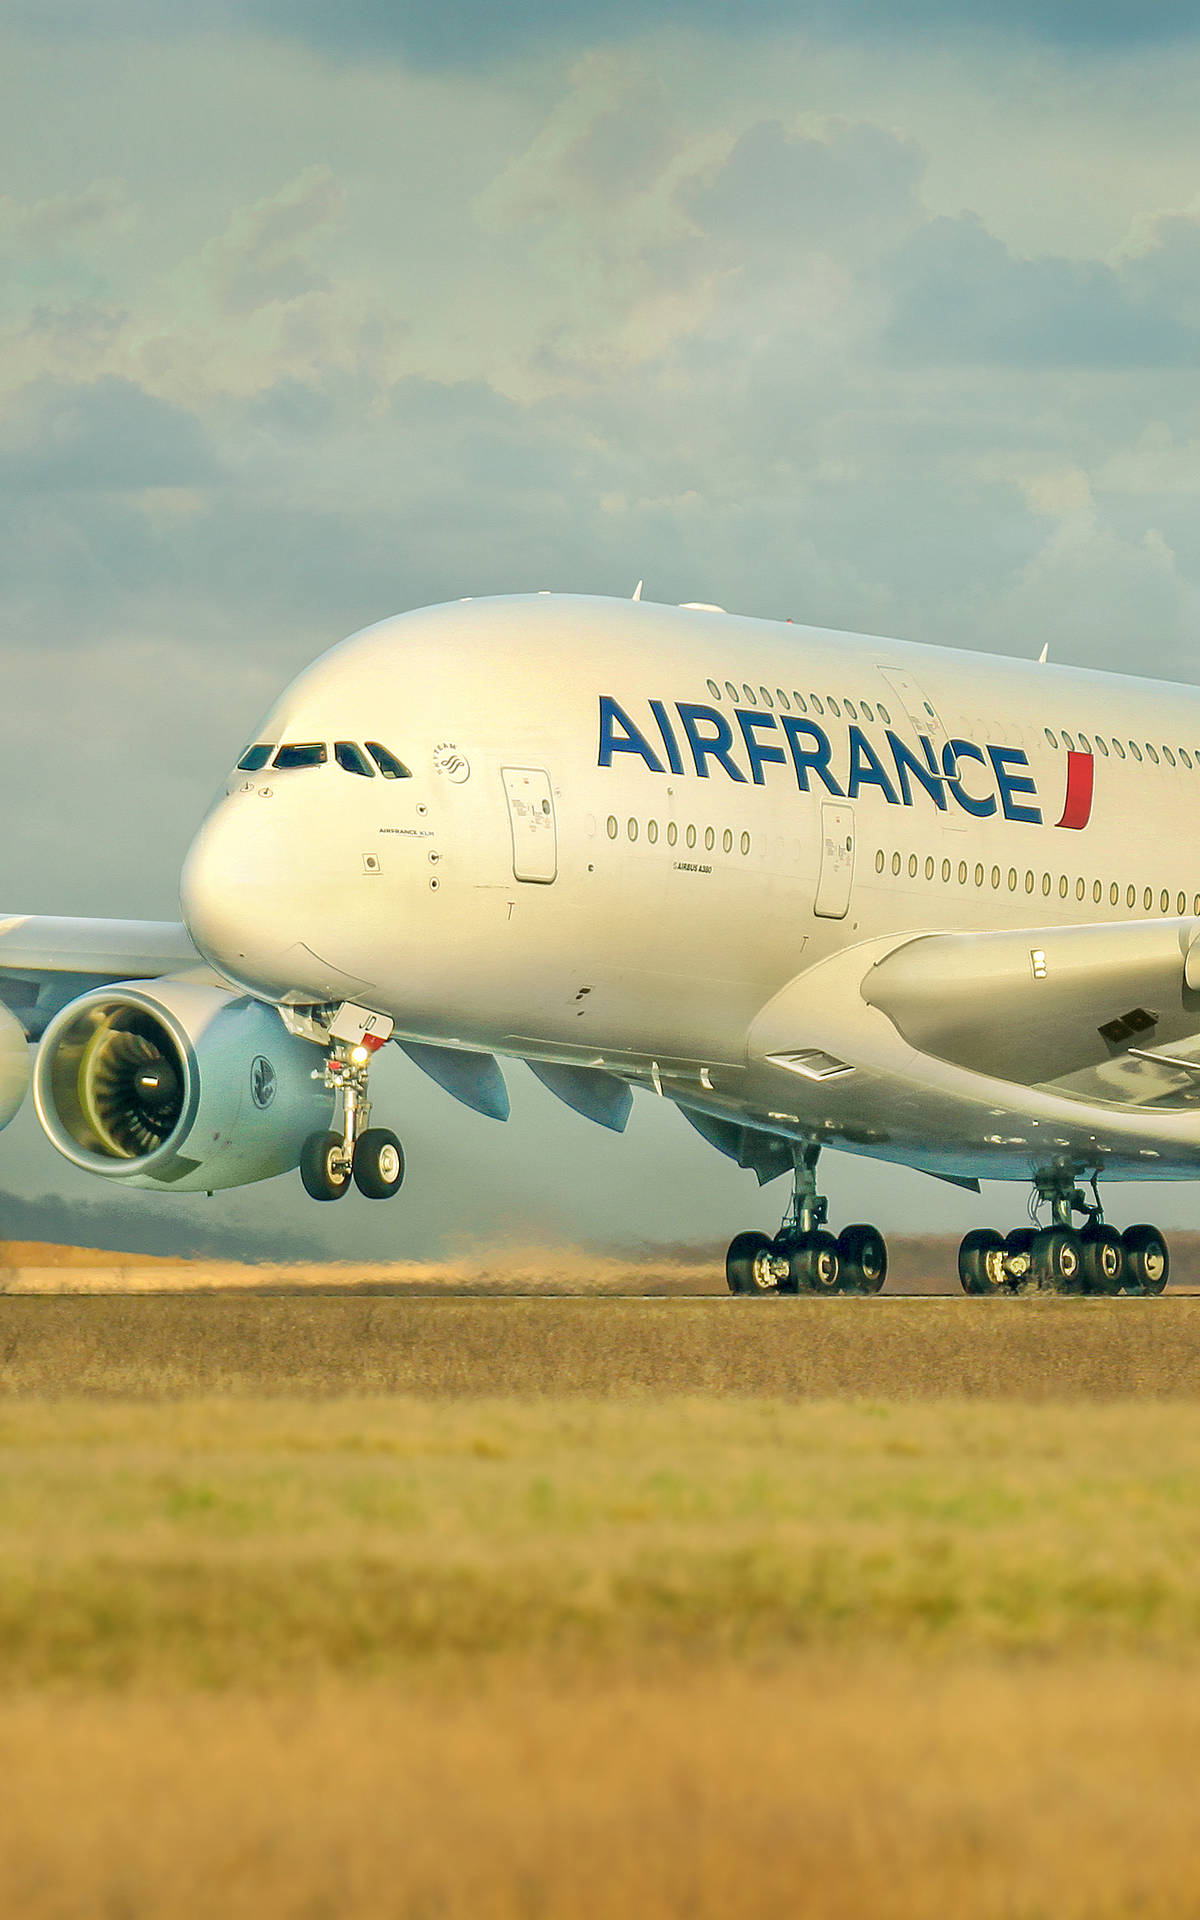 Airfrance, La Aerolínea Portadora, En El Airbus A380 En La Pista De Despegue. Fondo de pantalla